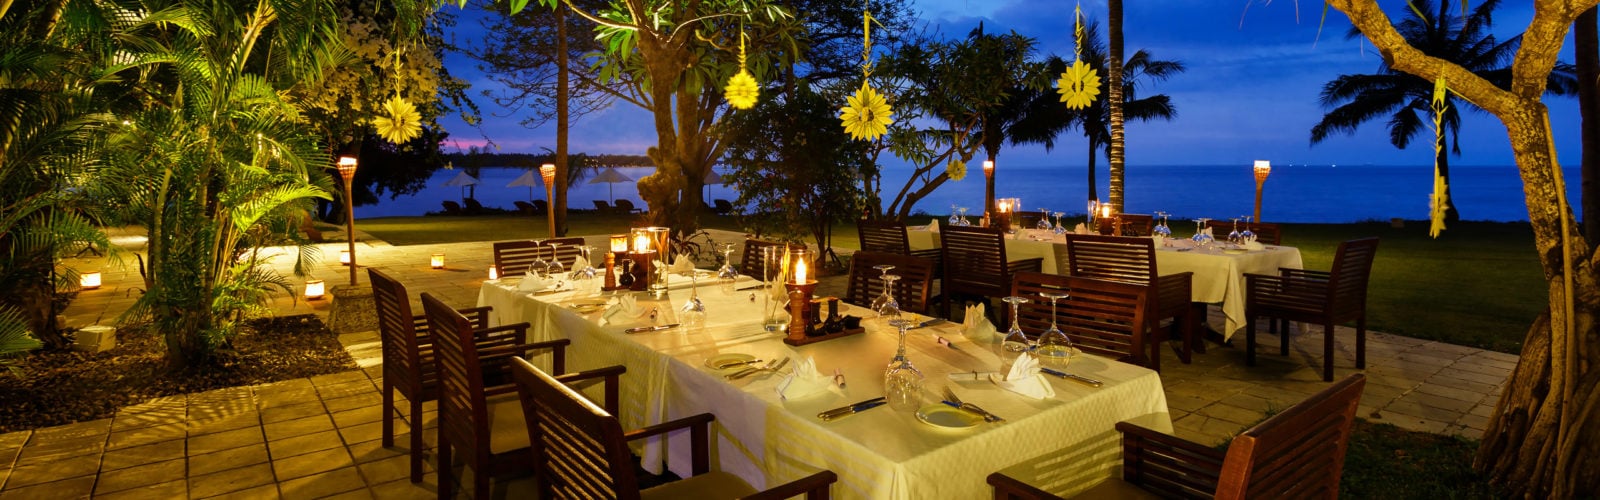 oberoi-lombok-outdoor-dining